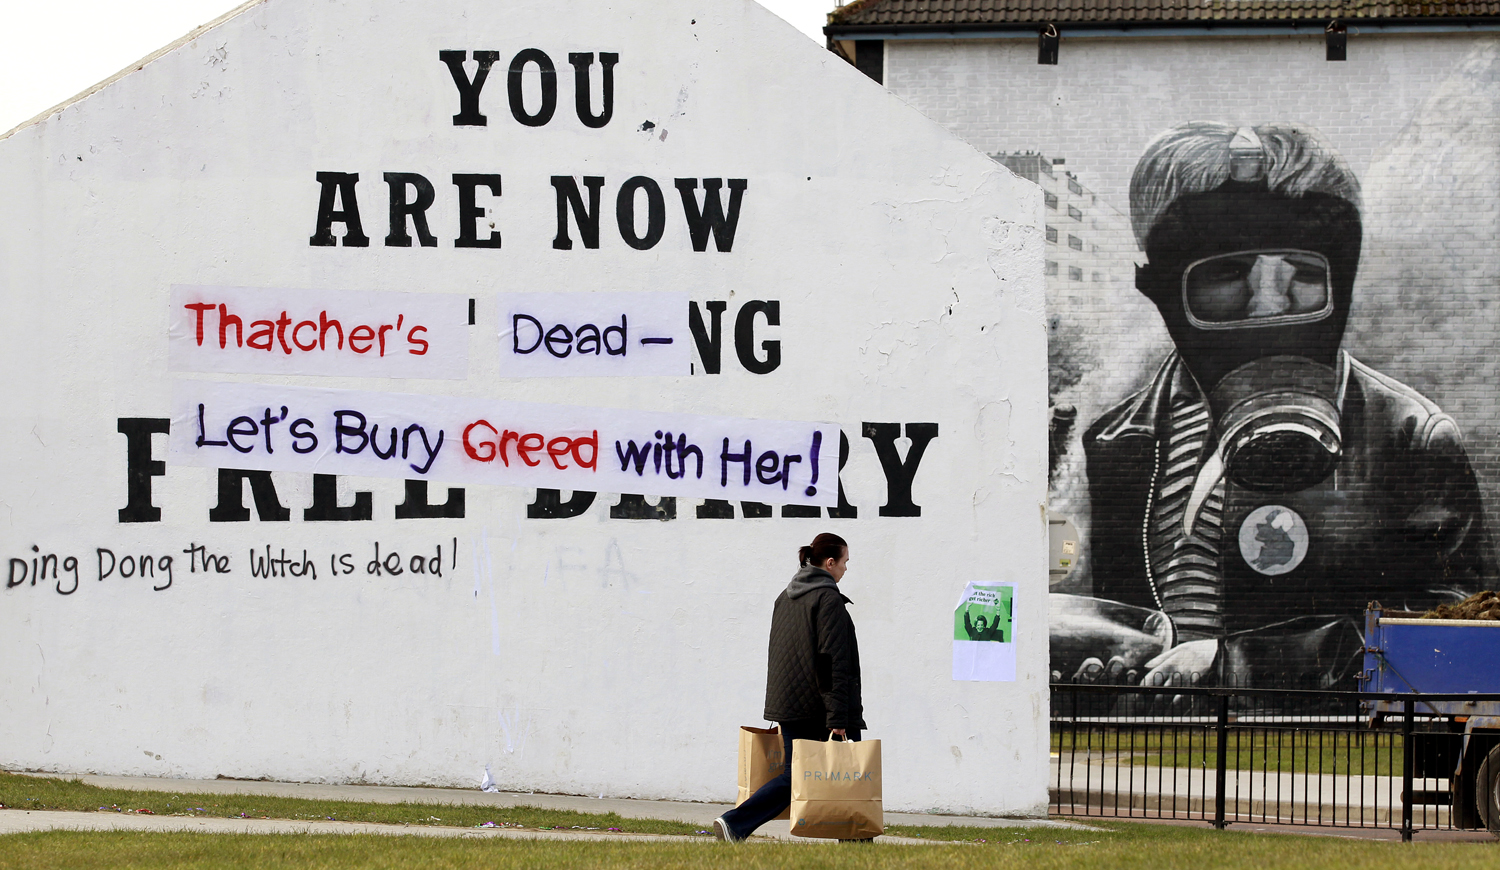 Thatcher halott, temessük el vele a kapzsiságot - áll egy halálon túl sem békülő feliraton Észak-Írországban